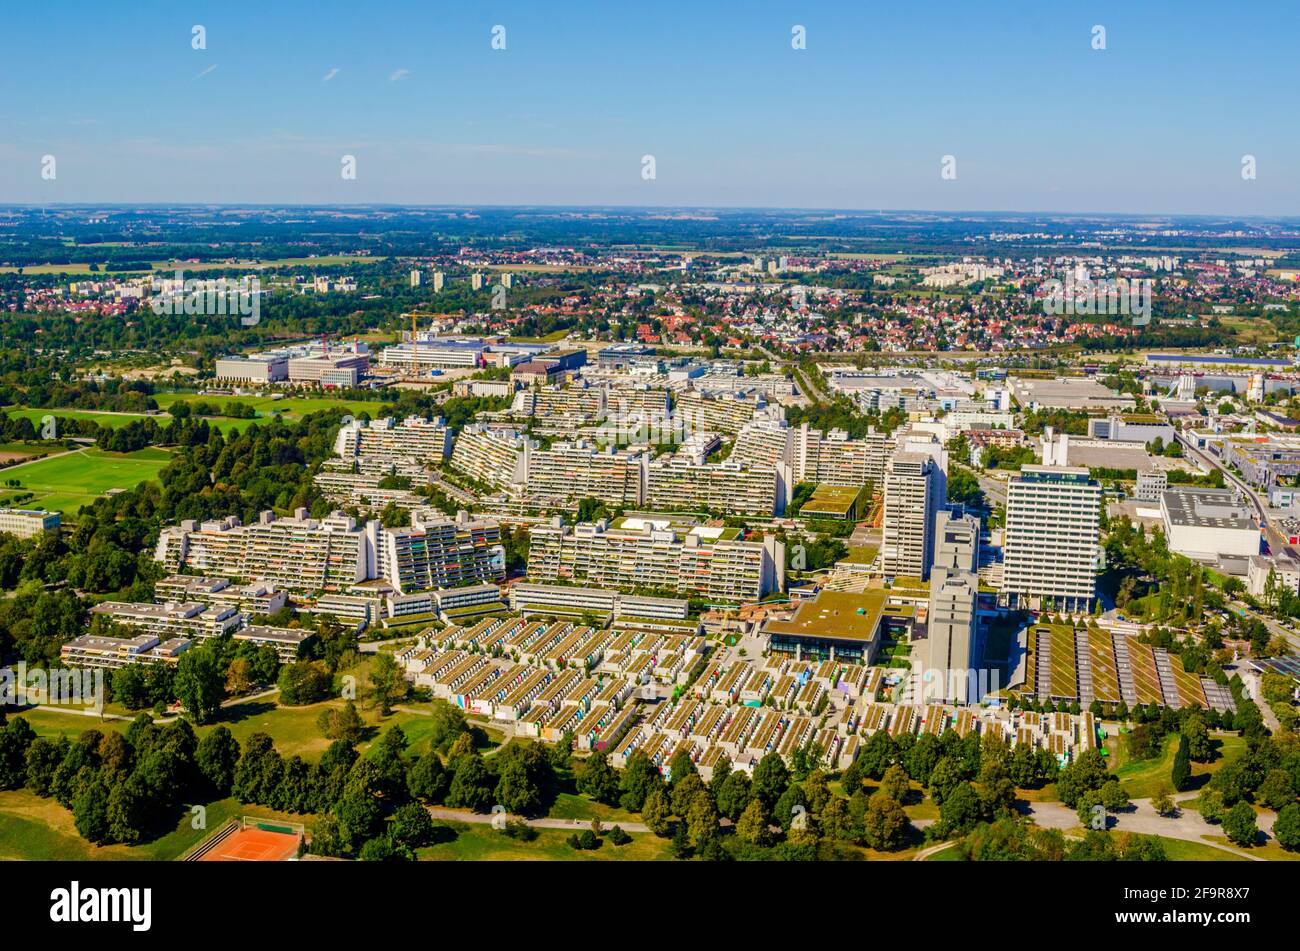 Das Olympische Dorf in München, Deutschland. Es wurde für die Olympischen Sommerspiele 1972 gebaut und diente während der Spiele als Unterkunft für die Athleten. Jetzt ist es ein s Stockfoto